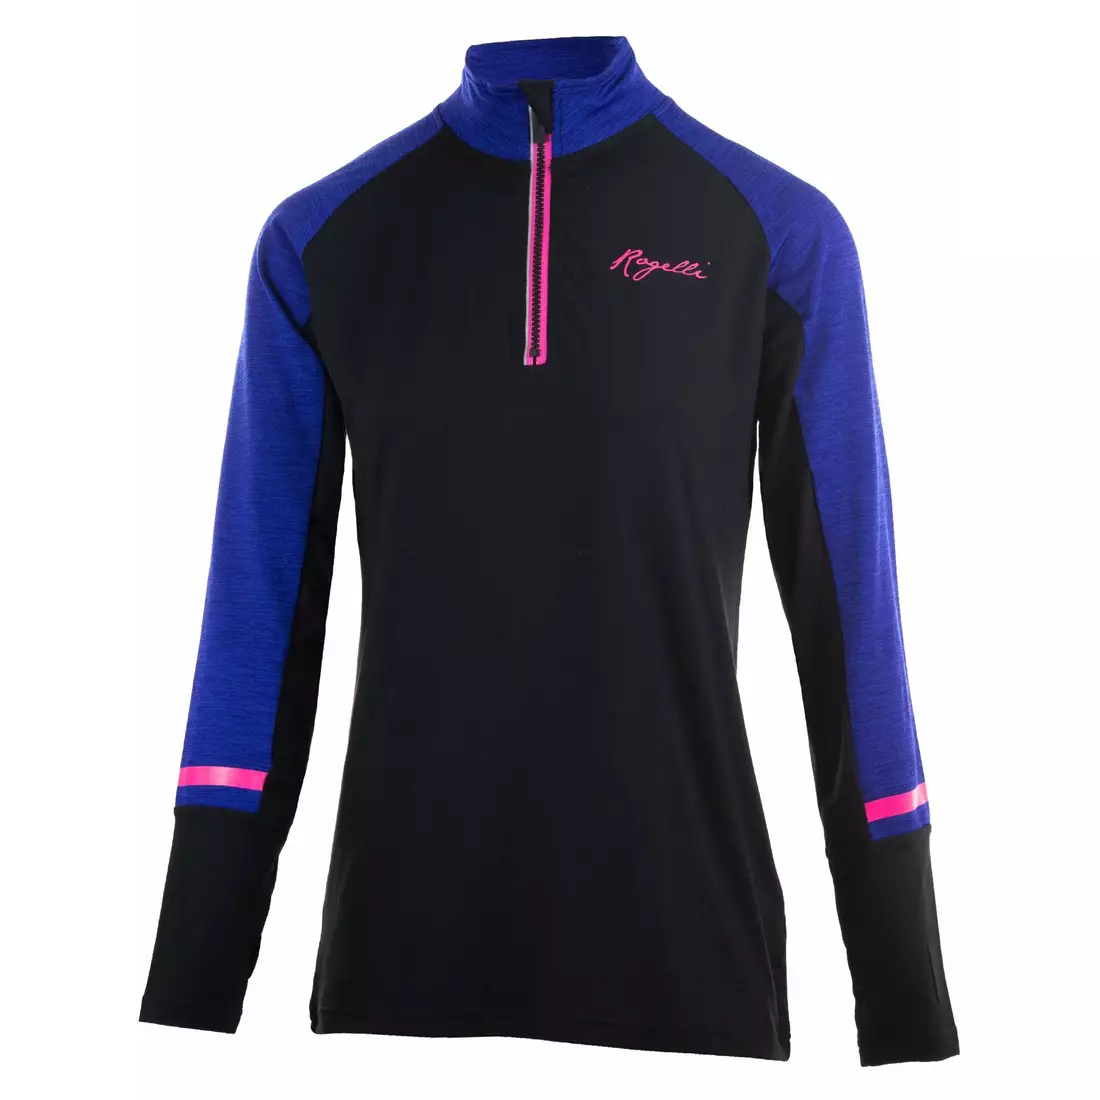 Rogelli COSMIC Dámské běžecké tričko s dlouhým rukávem v černé, modré a růžové barvě 840.666